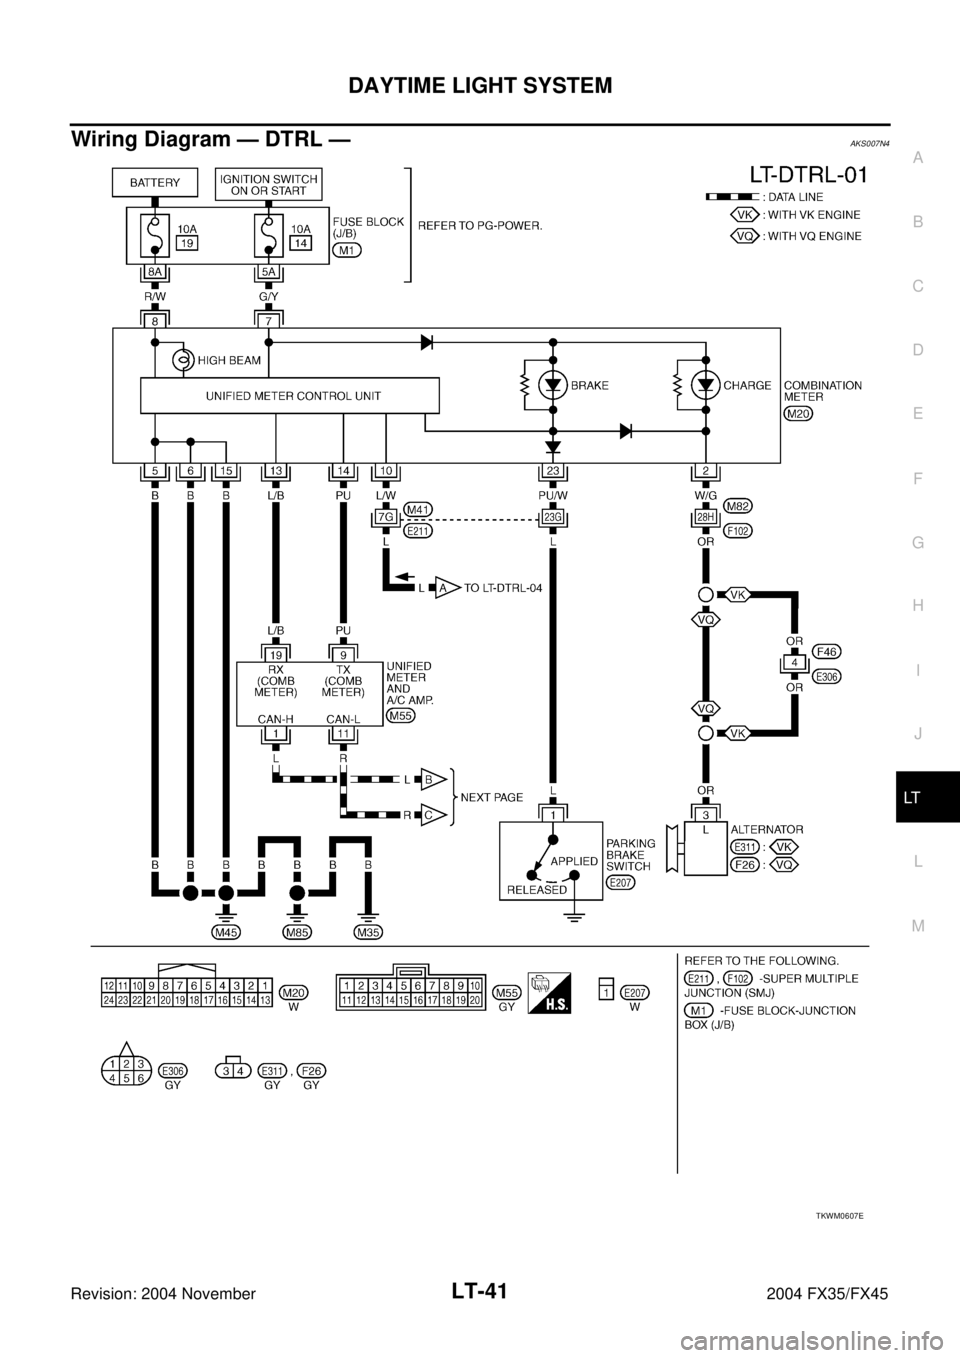 INFINITI FX35 2004  Service Manual DAYTIME LIGHT SYSTEM
LT-41
C
D
E
F
G
H
I
J
L
MA
B
LT
Revision: 2004 November 2004 FX35/FX45
Wiring Diagram — DTRL —AKS007N4
TKWM0607E 